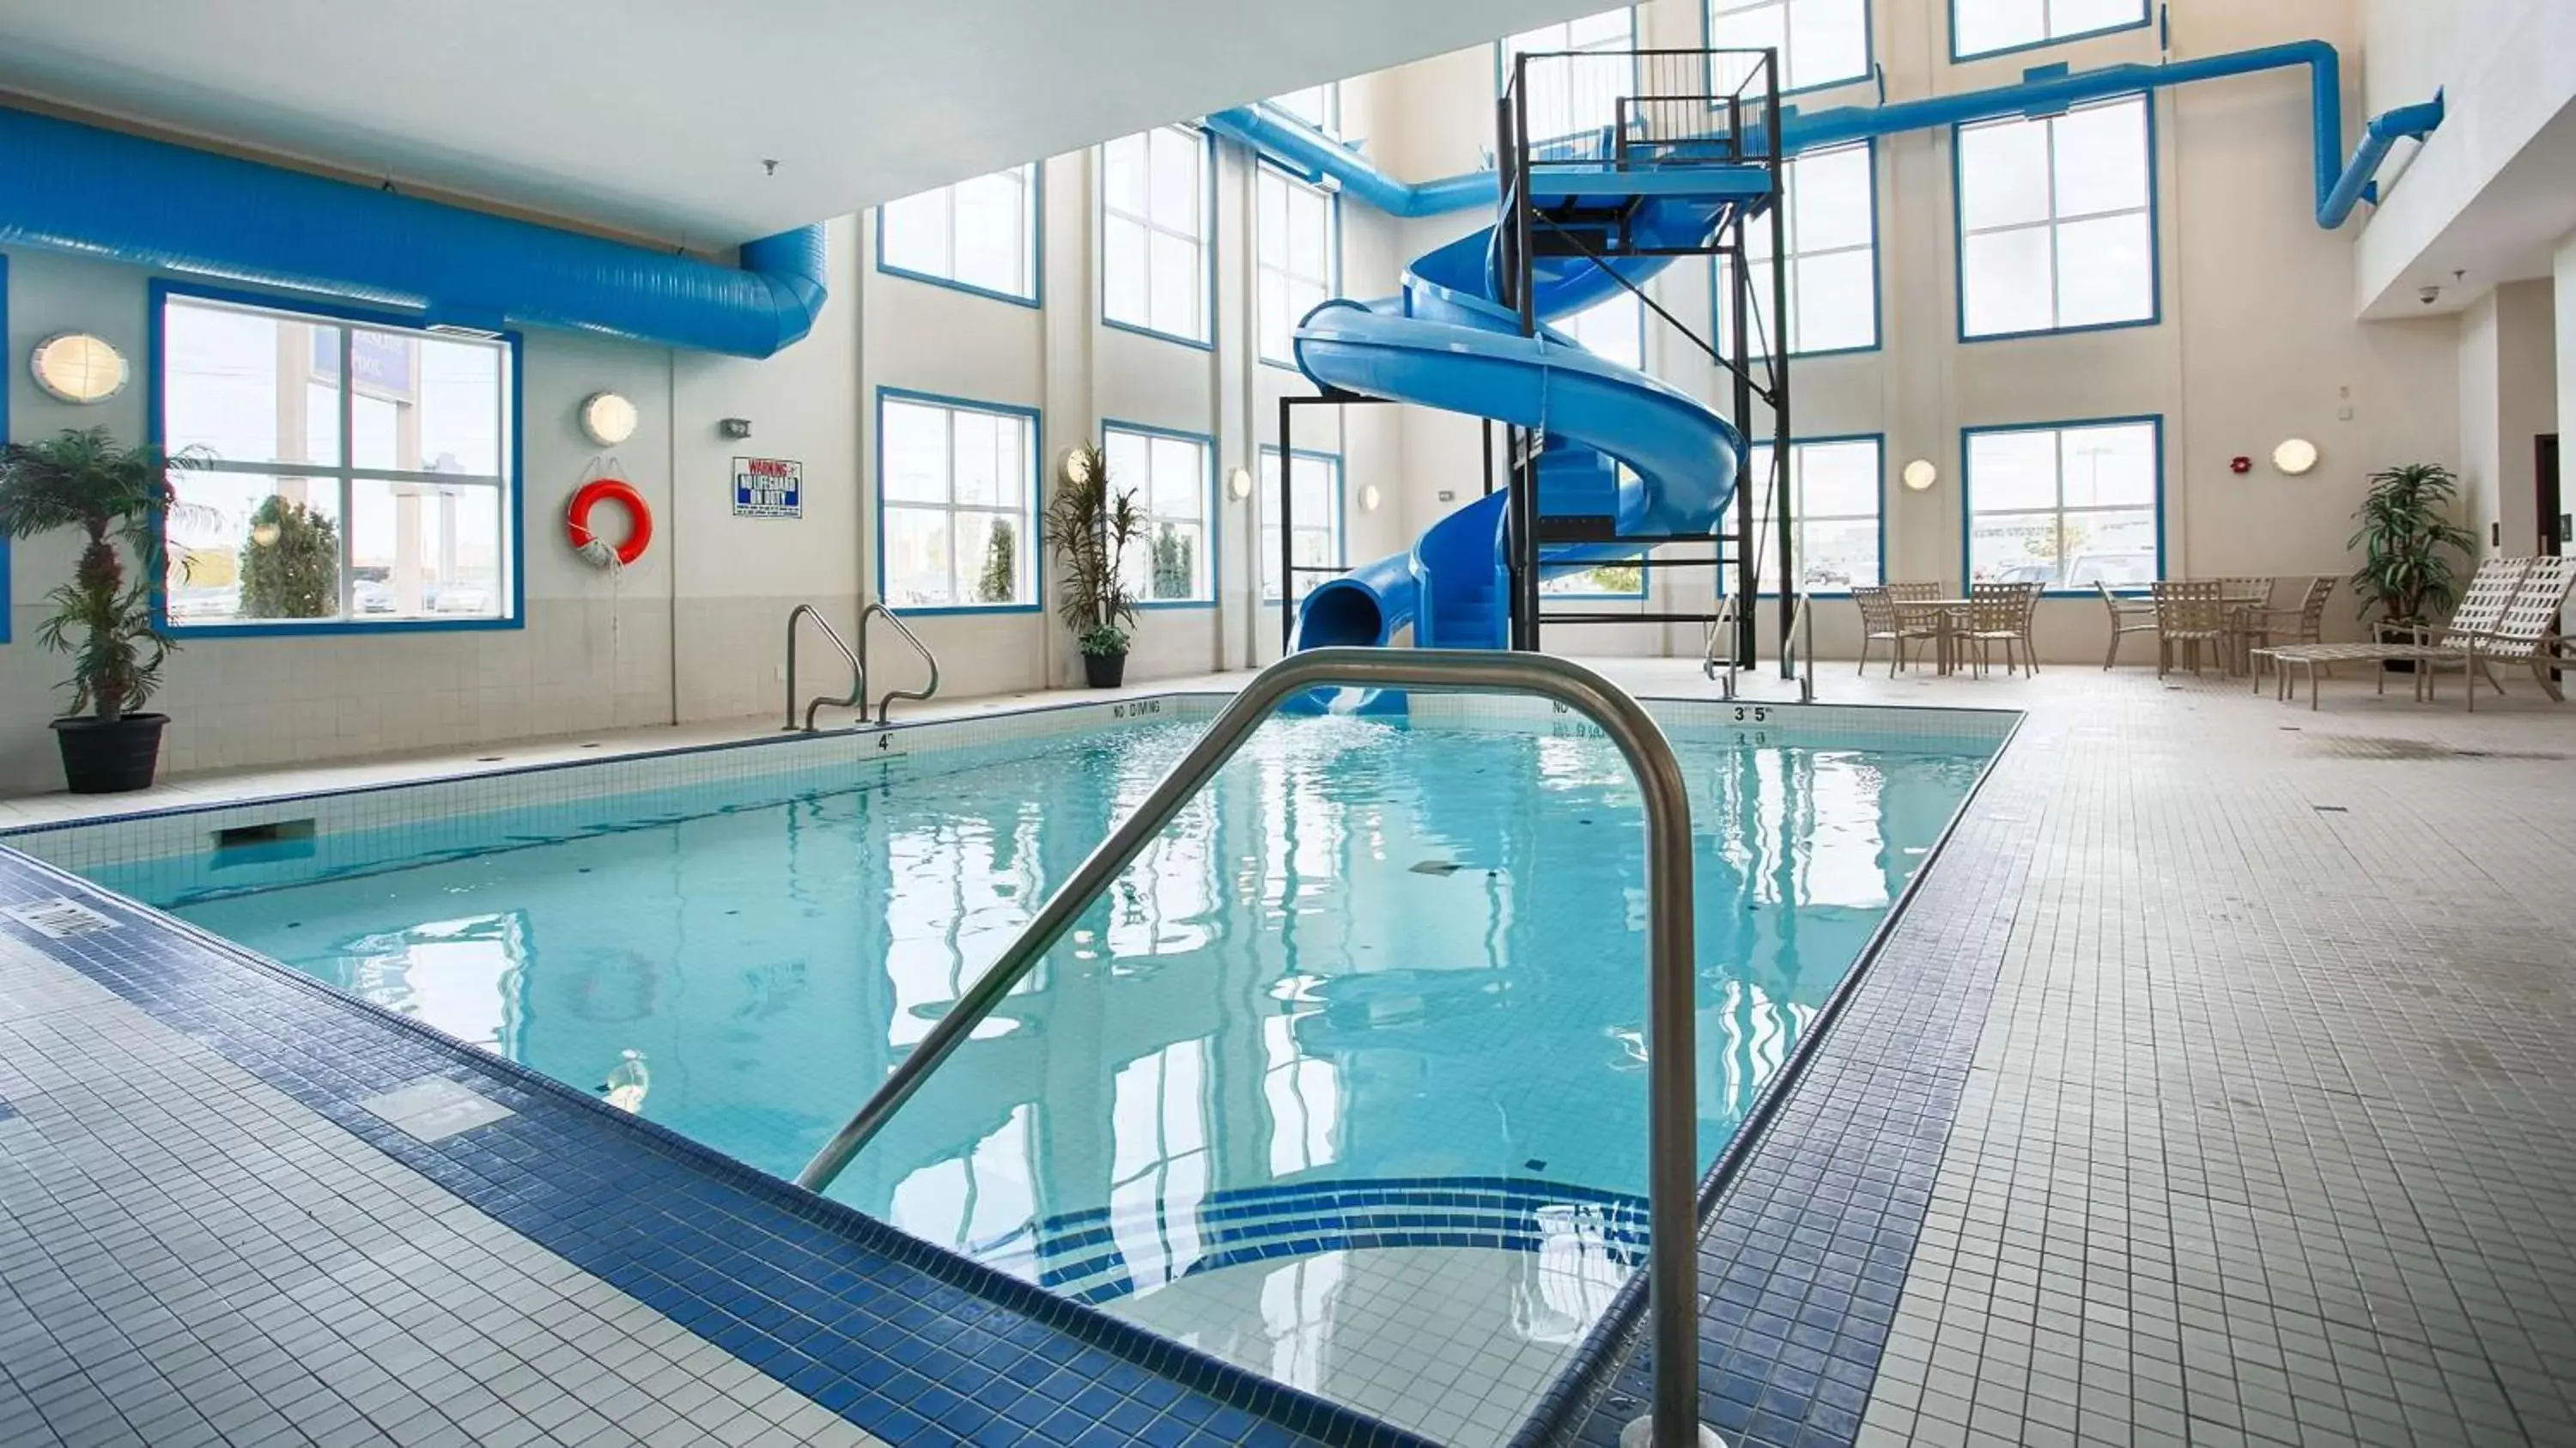 On site, Swimming Pool in Best Western Plus South Edmonton Inn & Suites